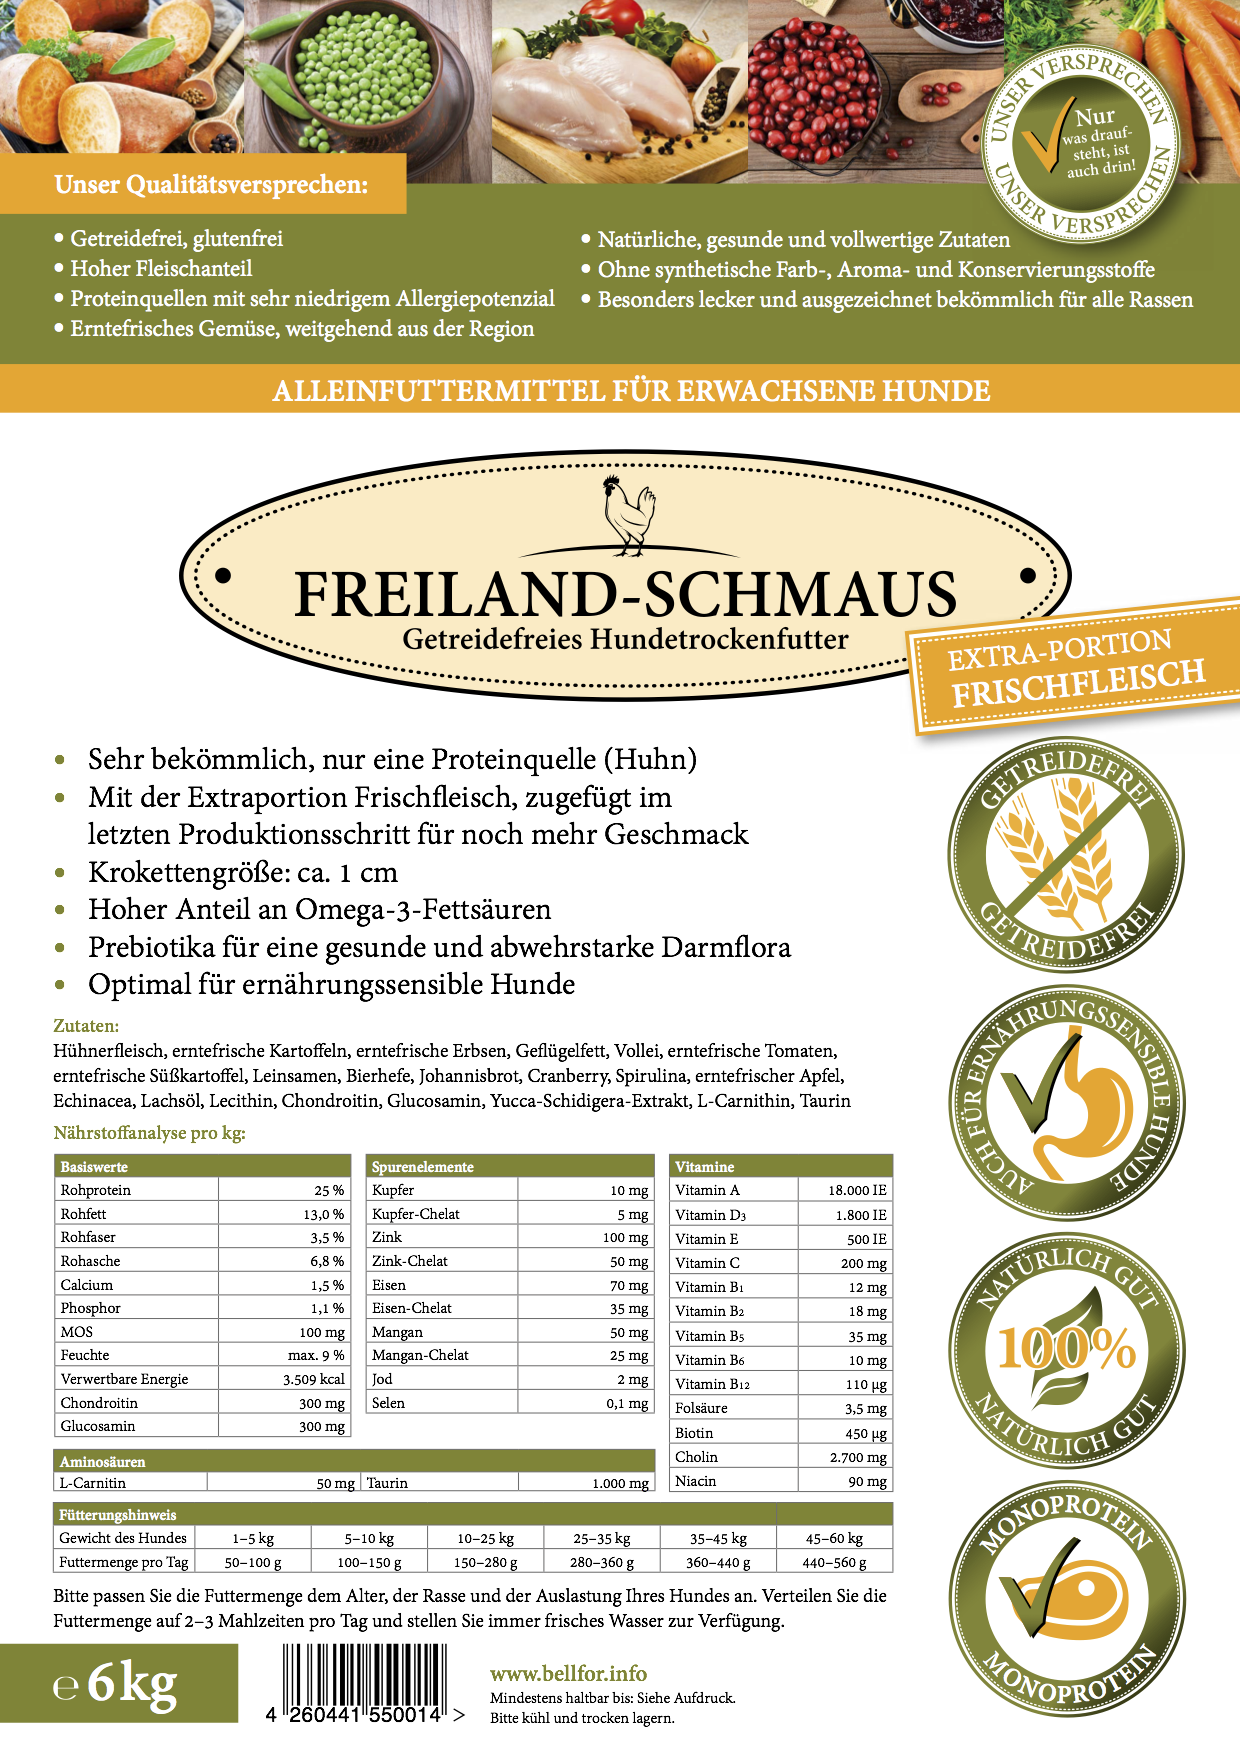 Freiland-Schmaus "Huhn", 6kg-Sack